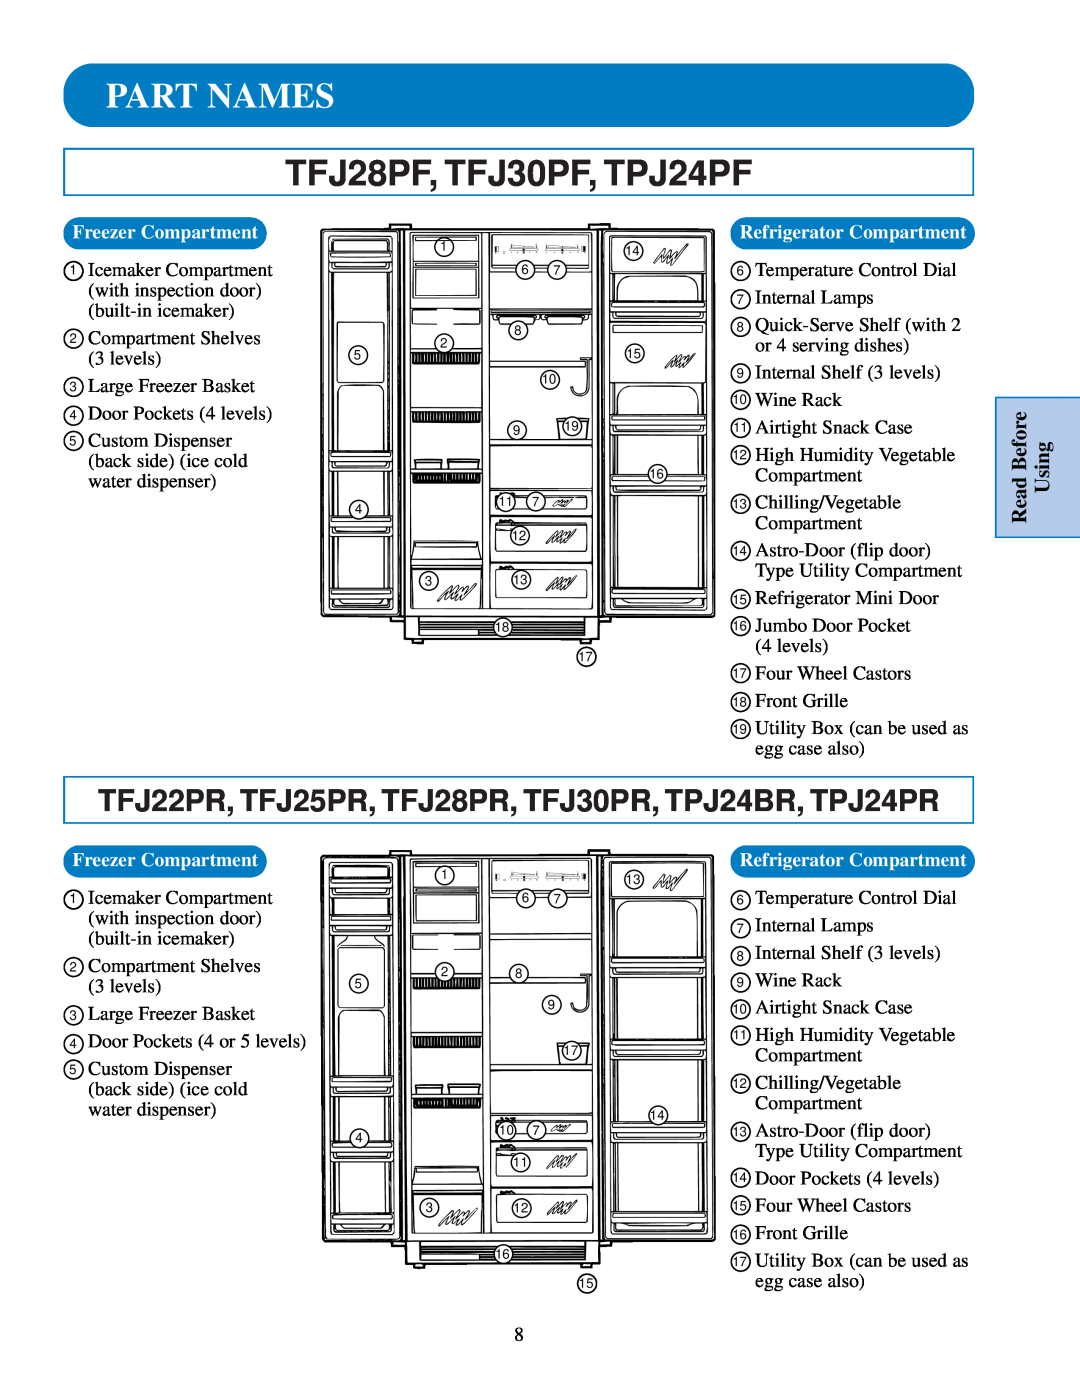 GE TPJ24PR Part Names, TFJ28PF, TFJ30PF, TPJ24PF, Read Before Using, Freezer Compartment, Refrigerator Compartment 